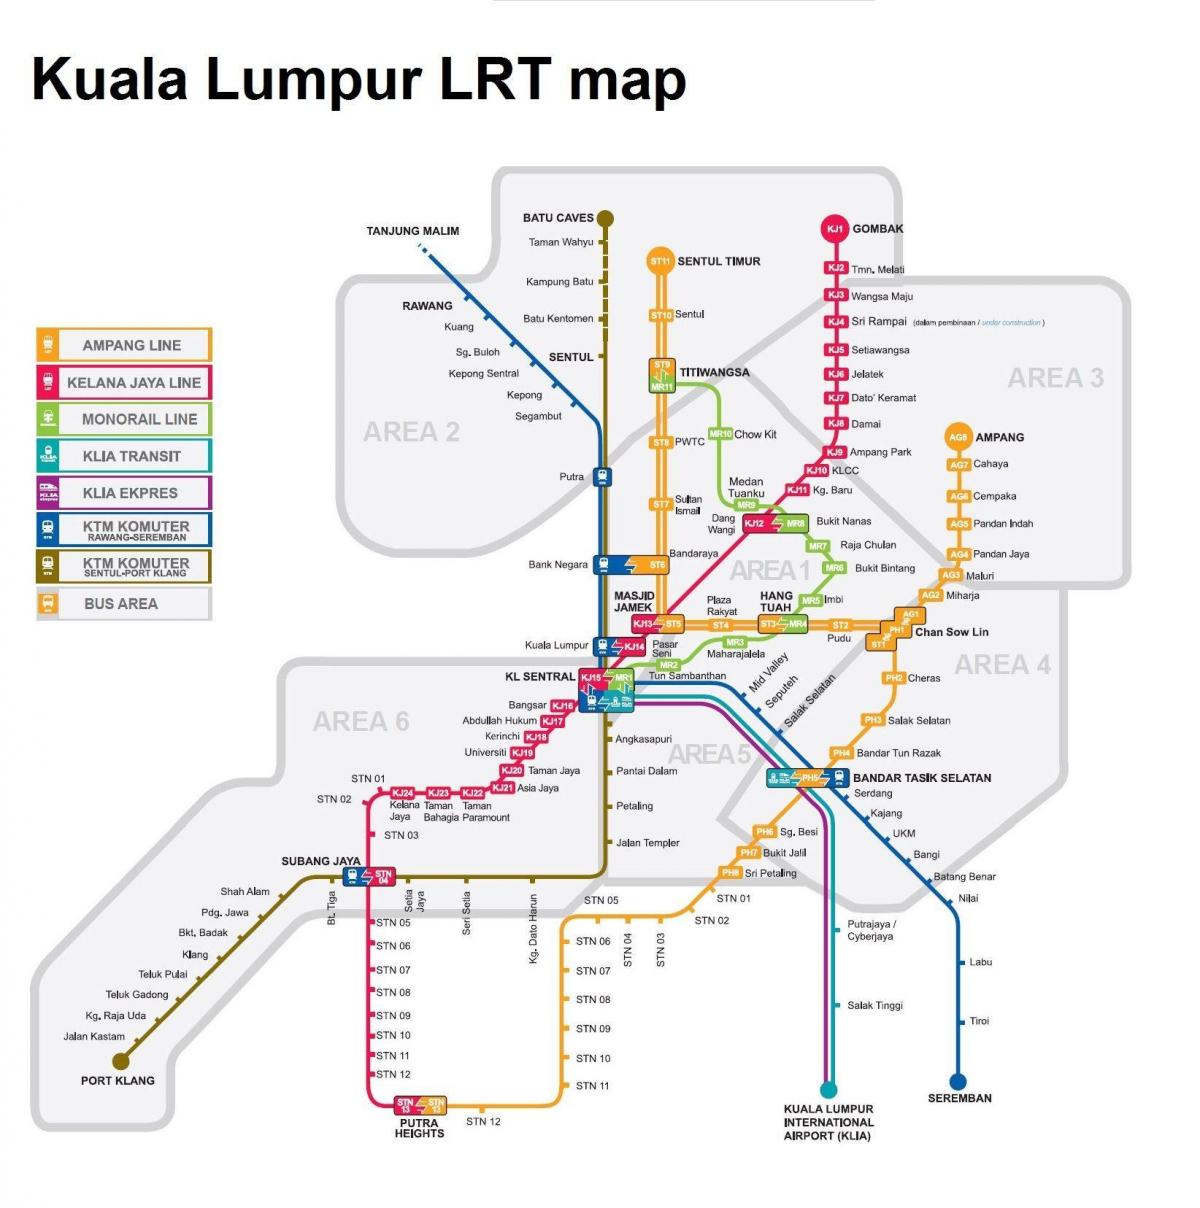 lrt mapa malásia 2016